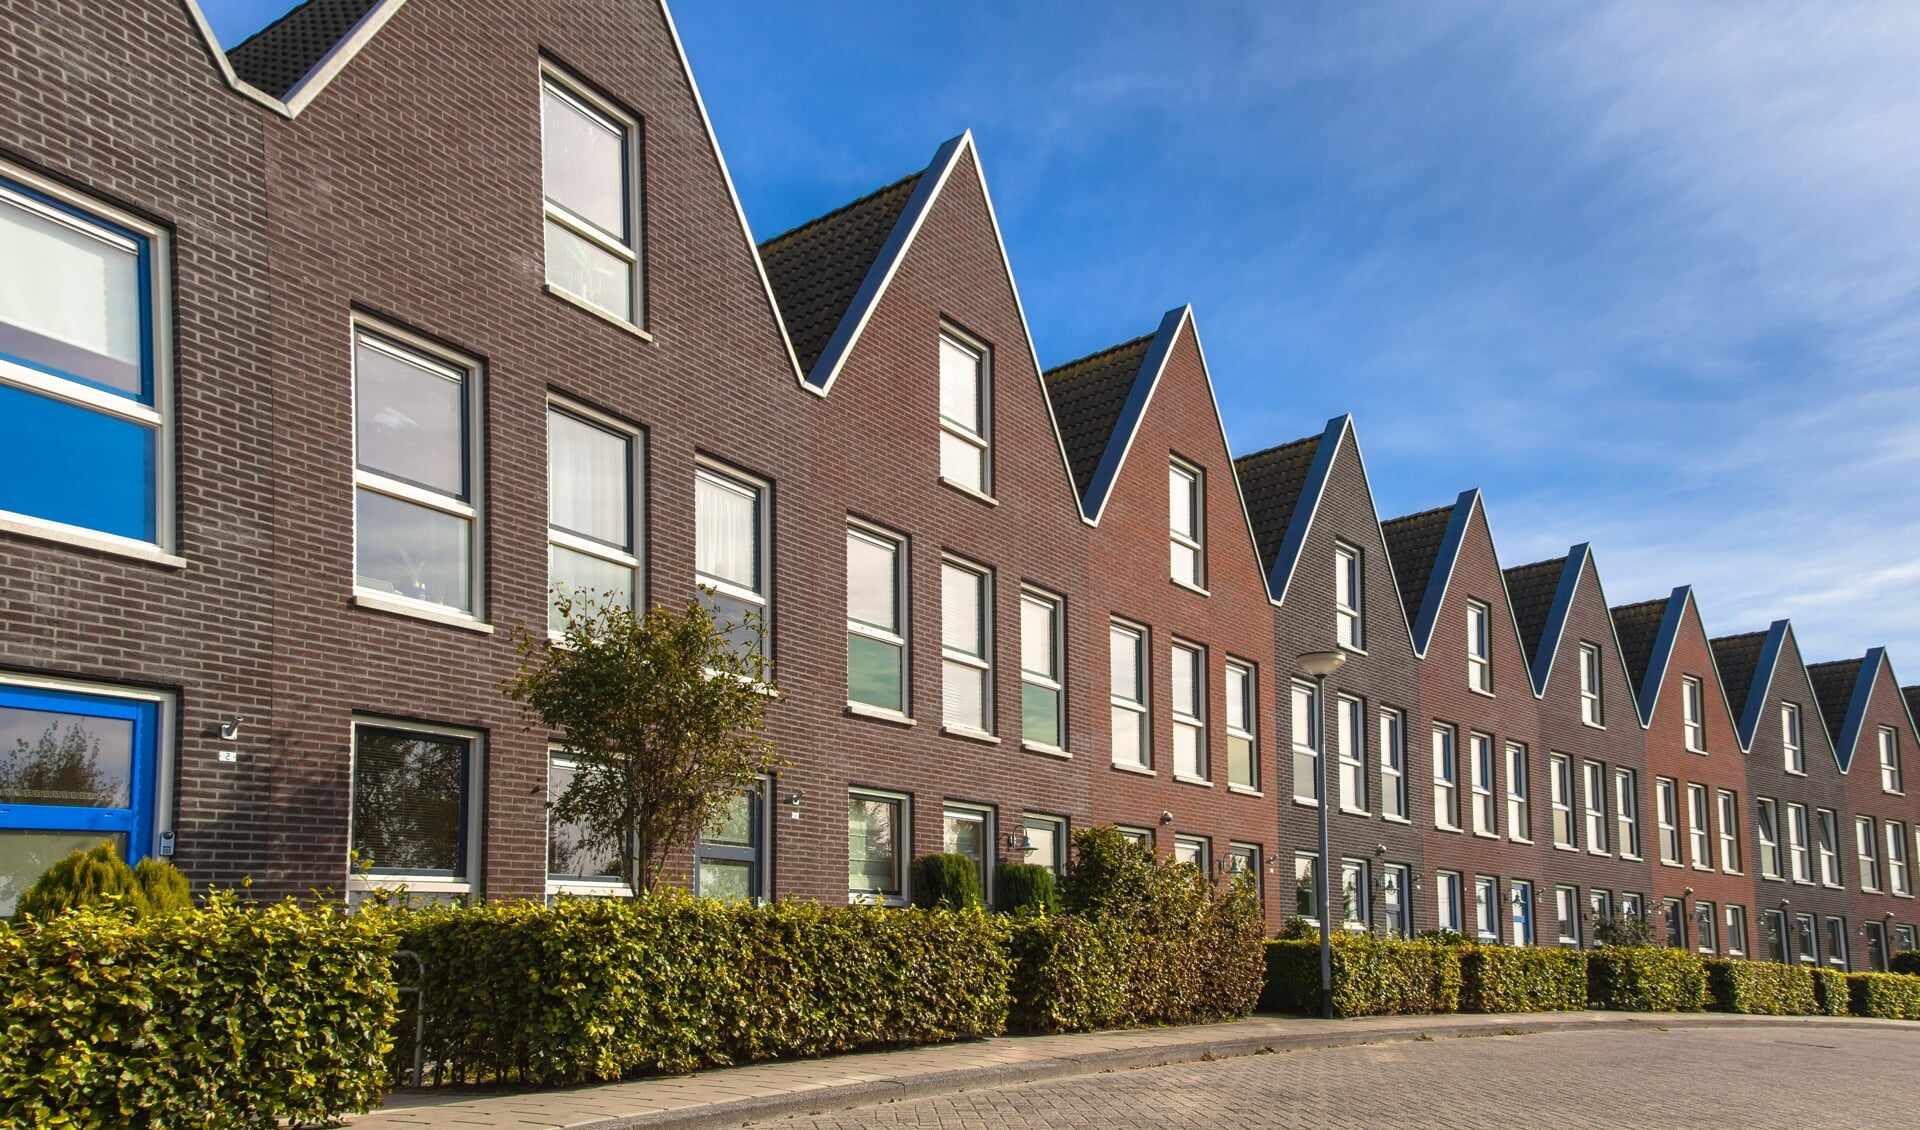 De woningmarkt is oververhit en daarom wil de Nieuwegeinse wethouder van Wonen binnenkort een opkoopbescherming invoeren. 